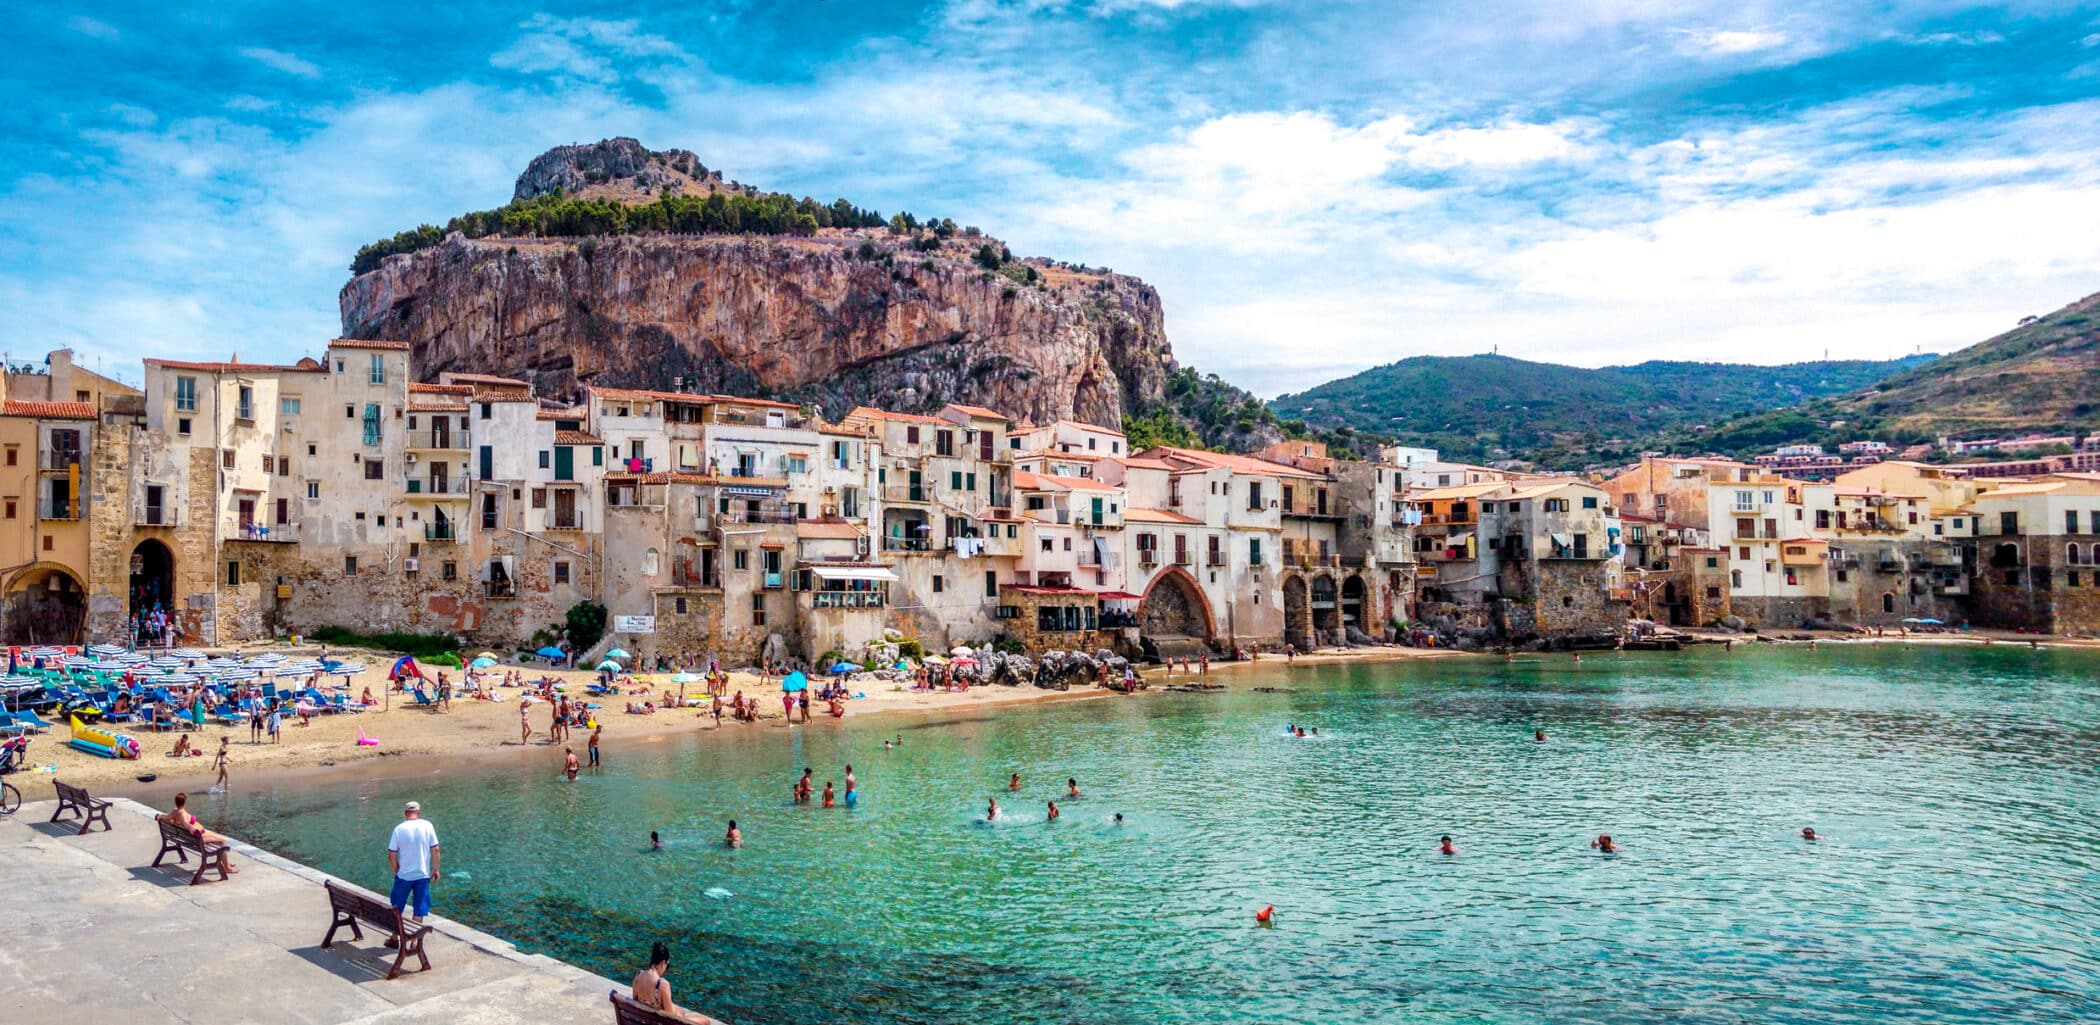 Cefalu, paradis i Italien og Sicilien. Rejser til Italien